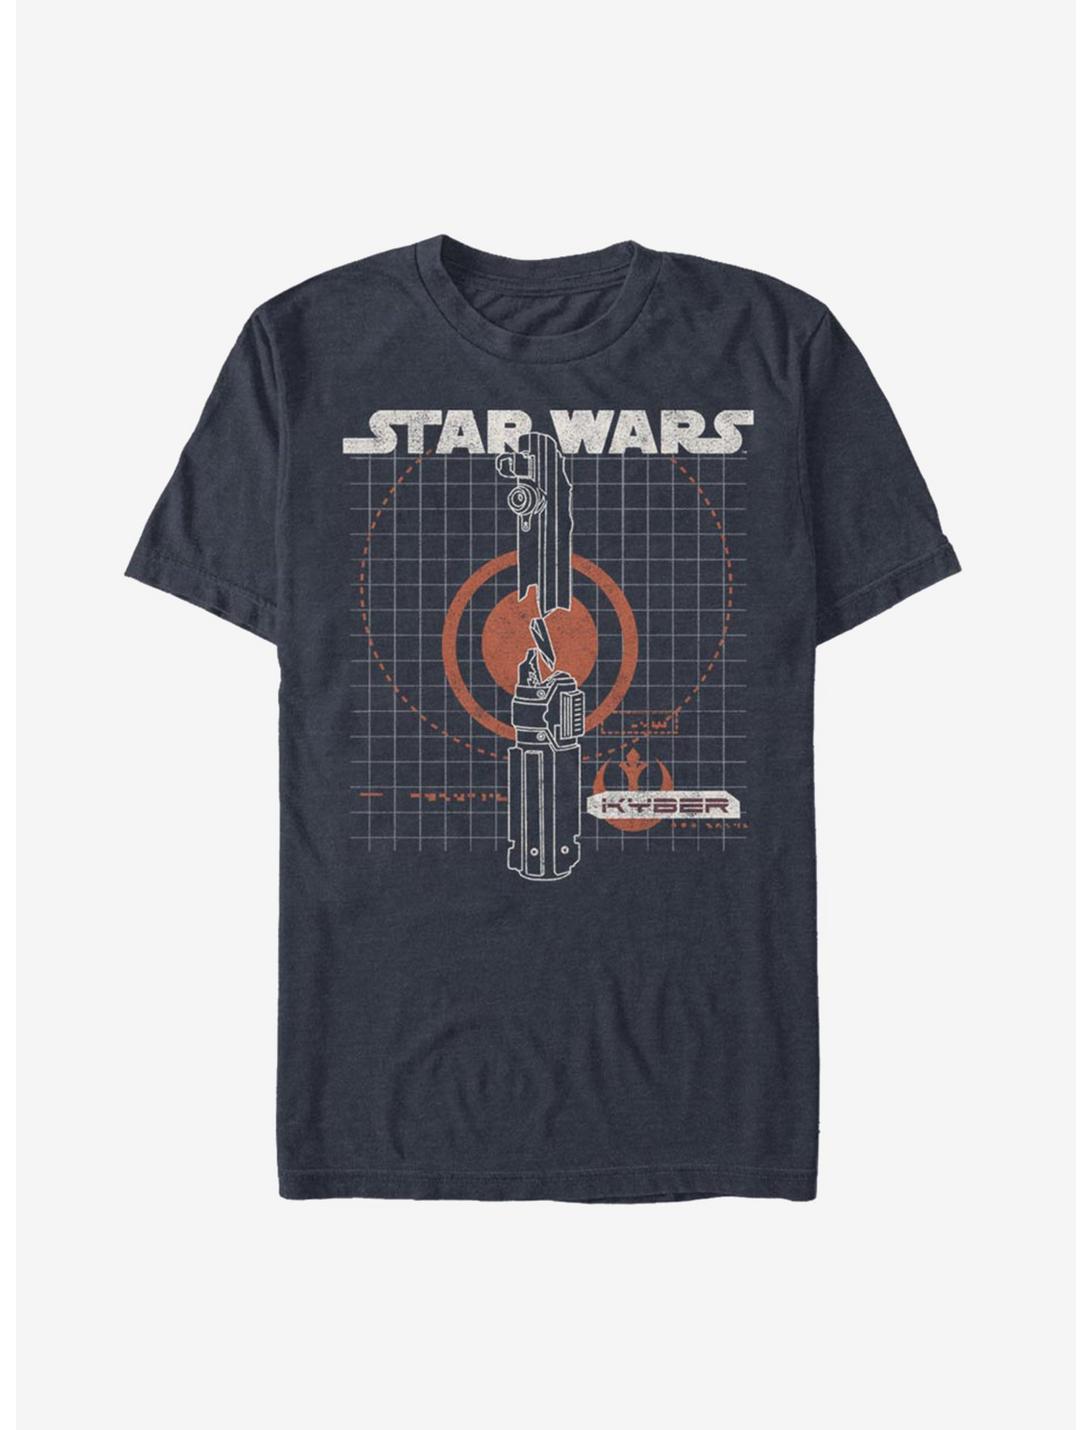 Star Wars Episode IX The Rise Of Skywalker Kyber Crystal T-Shirt, NAVY HTR, hi-res